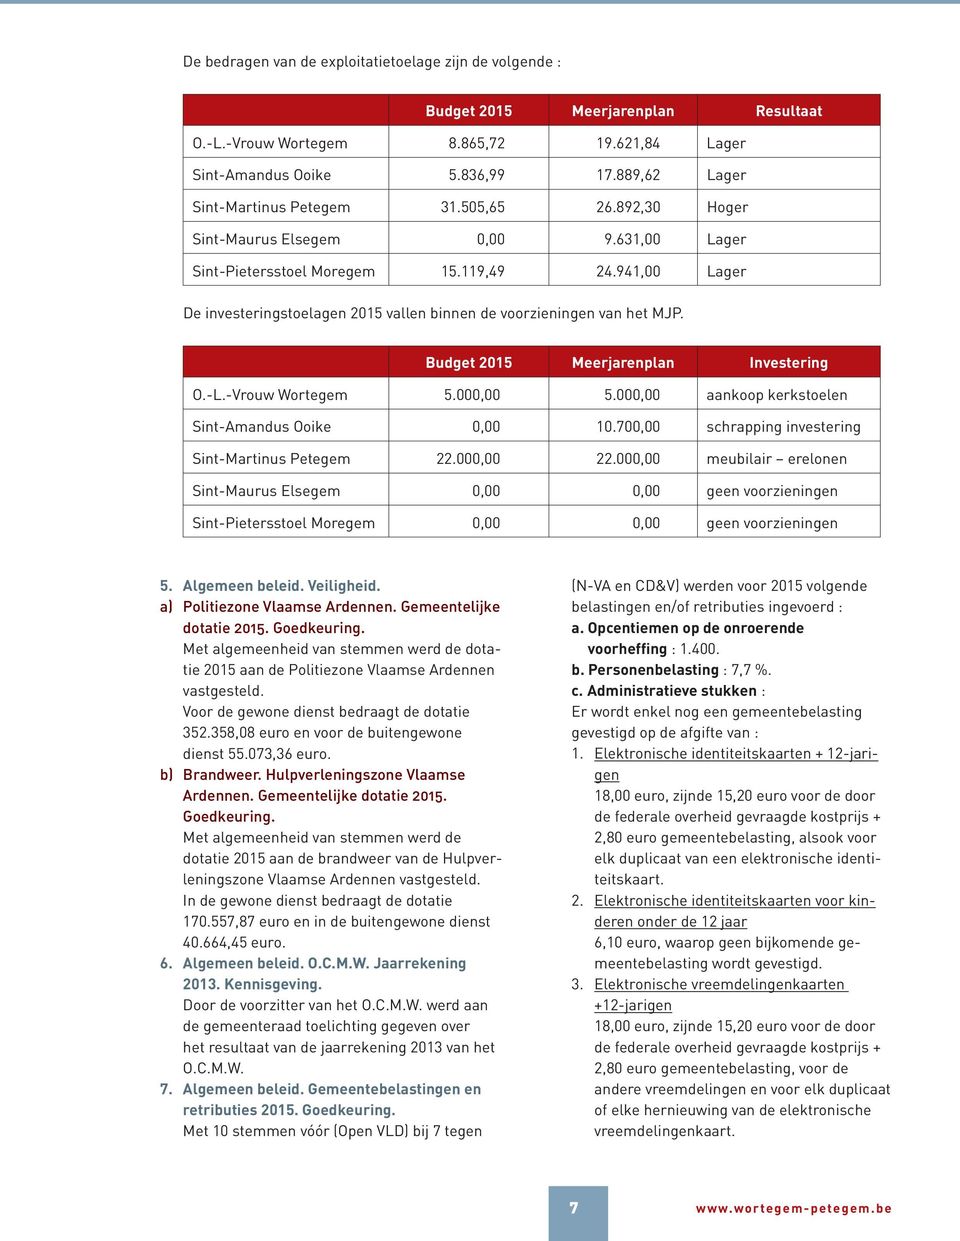 941,00 Lager De investeringstoelagen 2015 vallen binnen de voorzieningen van het MJP. Budget 2015 Meerjarenplan Investering O.-L.-Vrouw Wortegem 5.000,00 5.